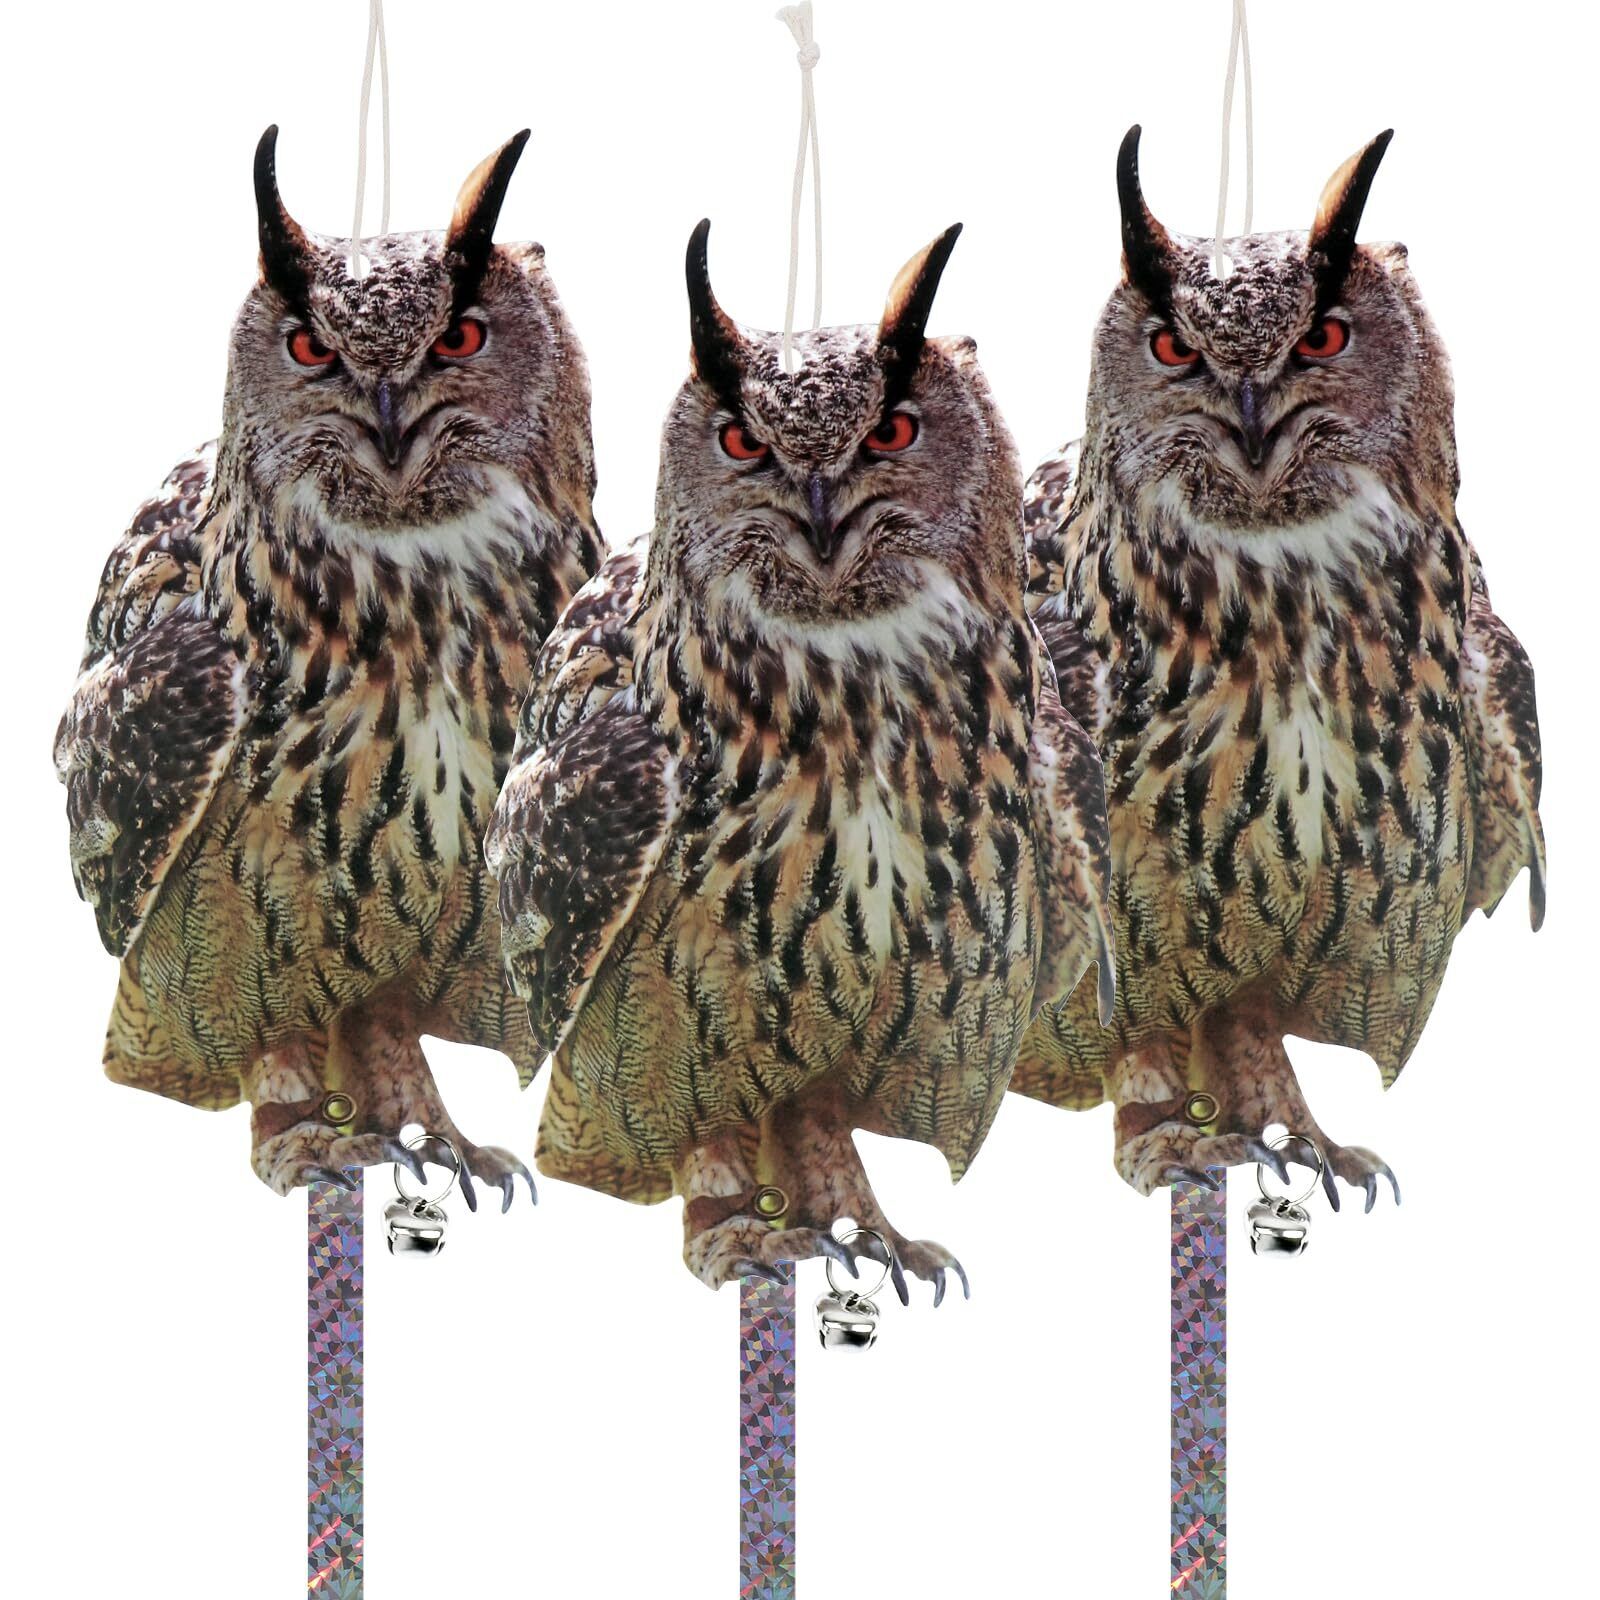 Kungfu Mall Owl to Keep Birds Away, 3Pcs Bird Scare Reflective Hanging Decora...